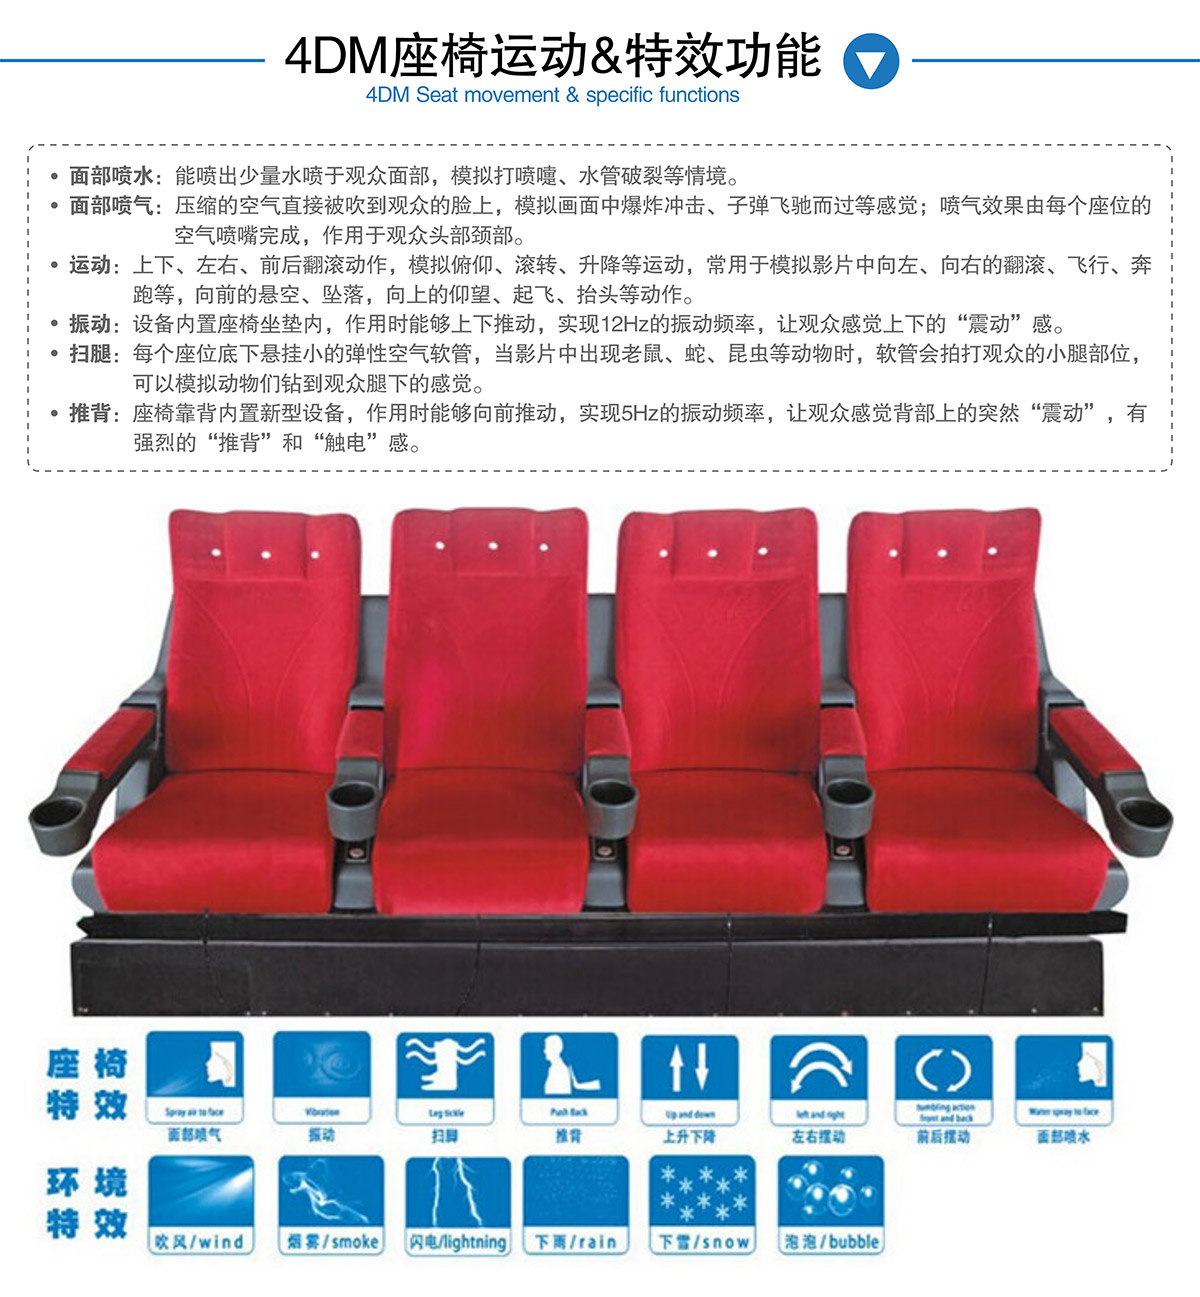 地震4DM座椅运动和特效功能.jpg